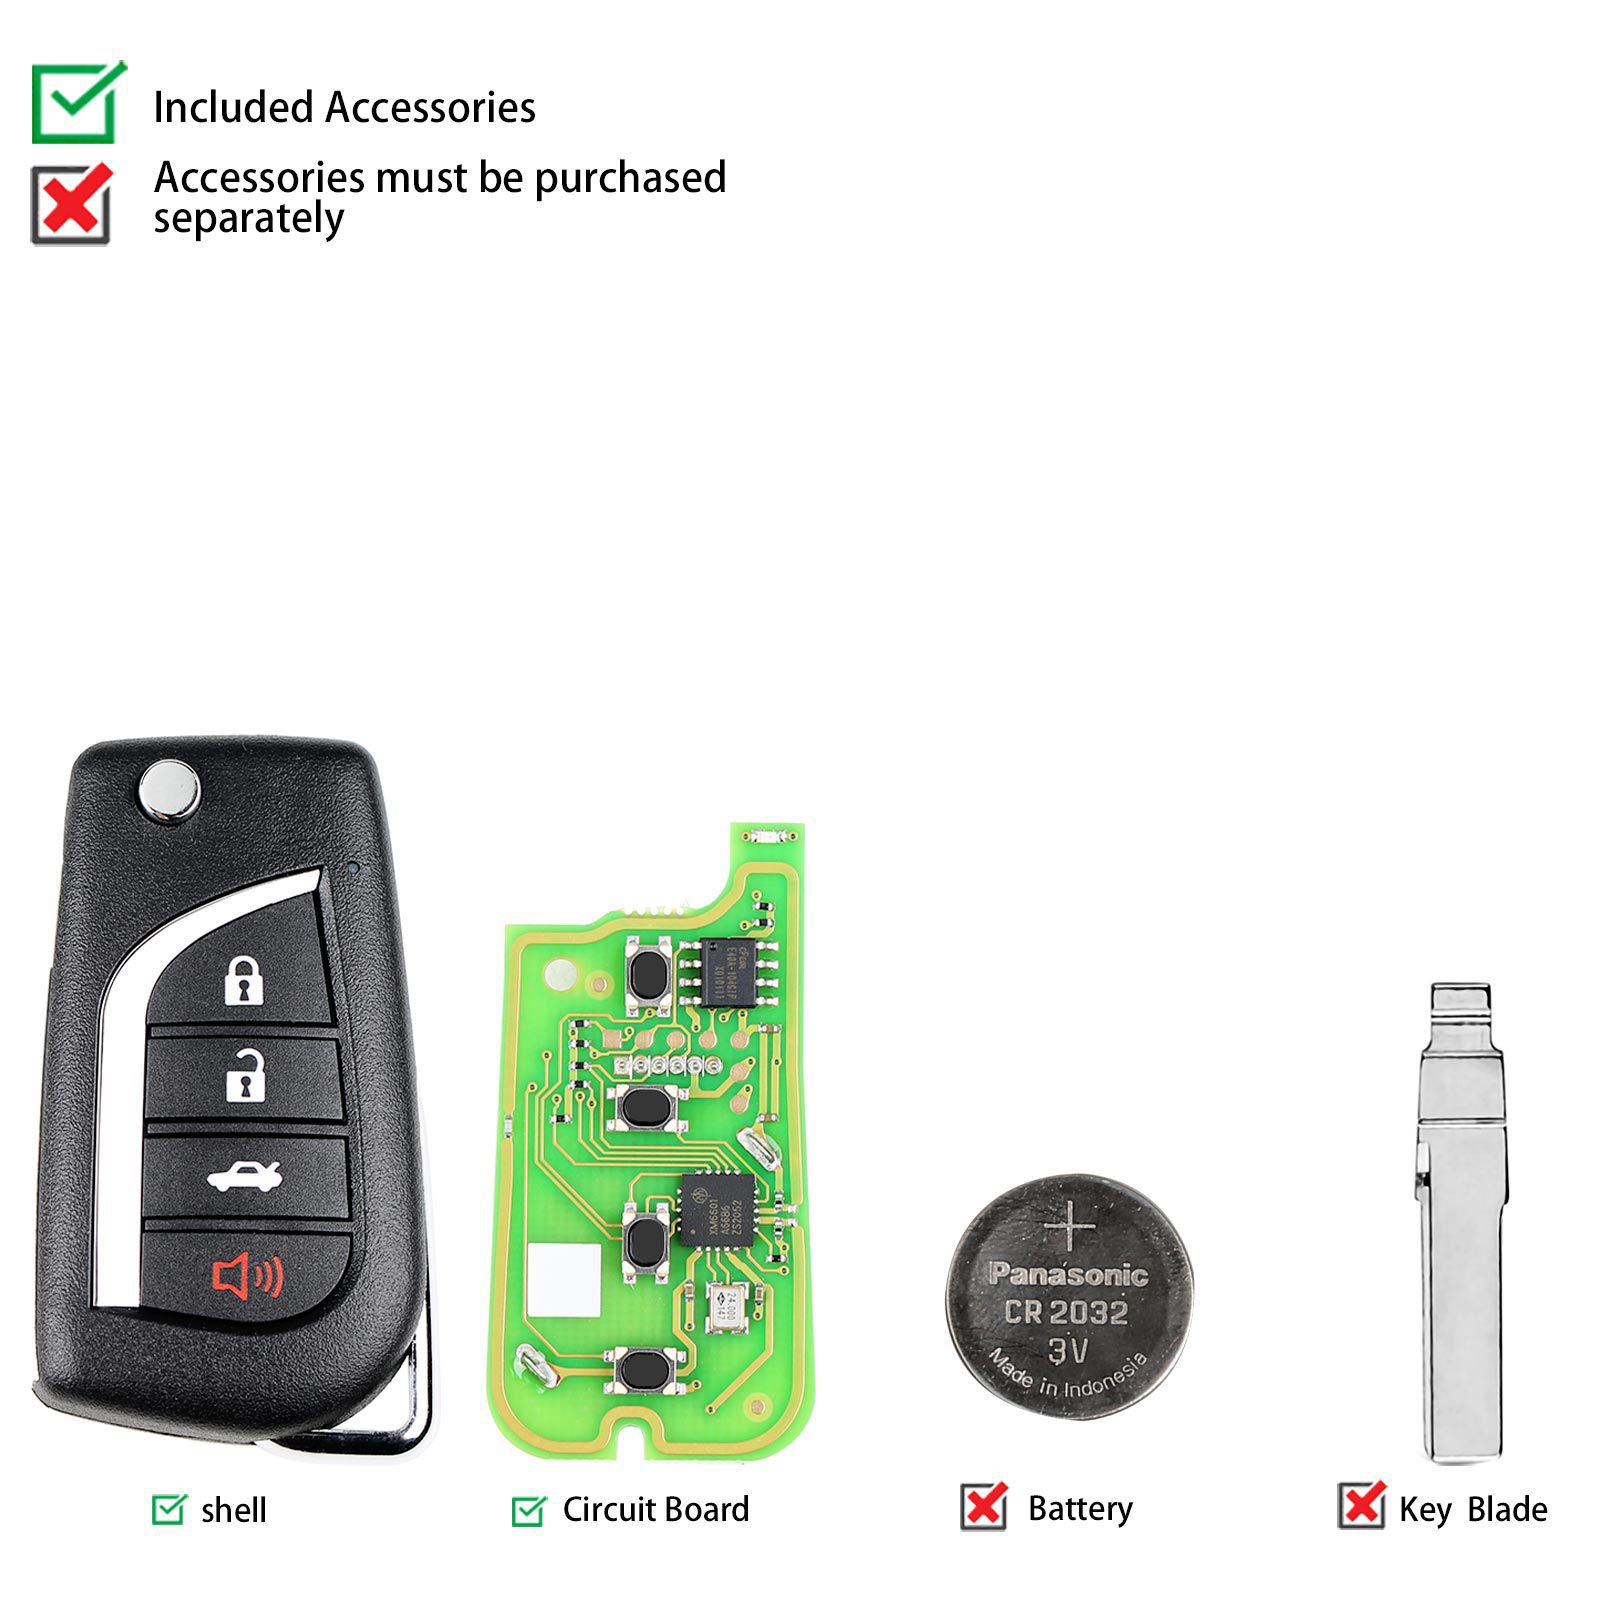 Xhorse xkto10en Wire télécommande clé Toyota Flip 4 boutons version anglaise 5pcs / lot